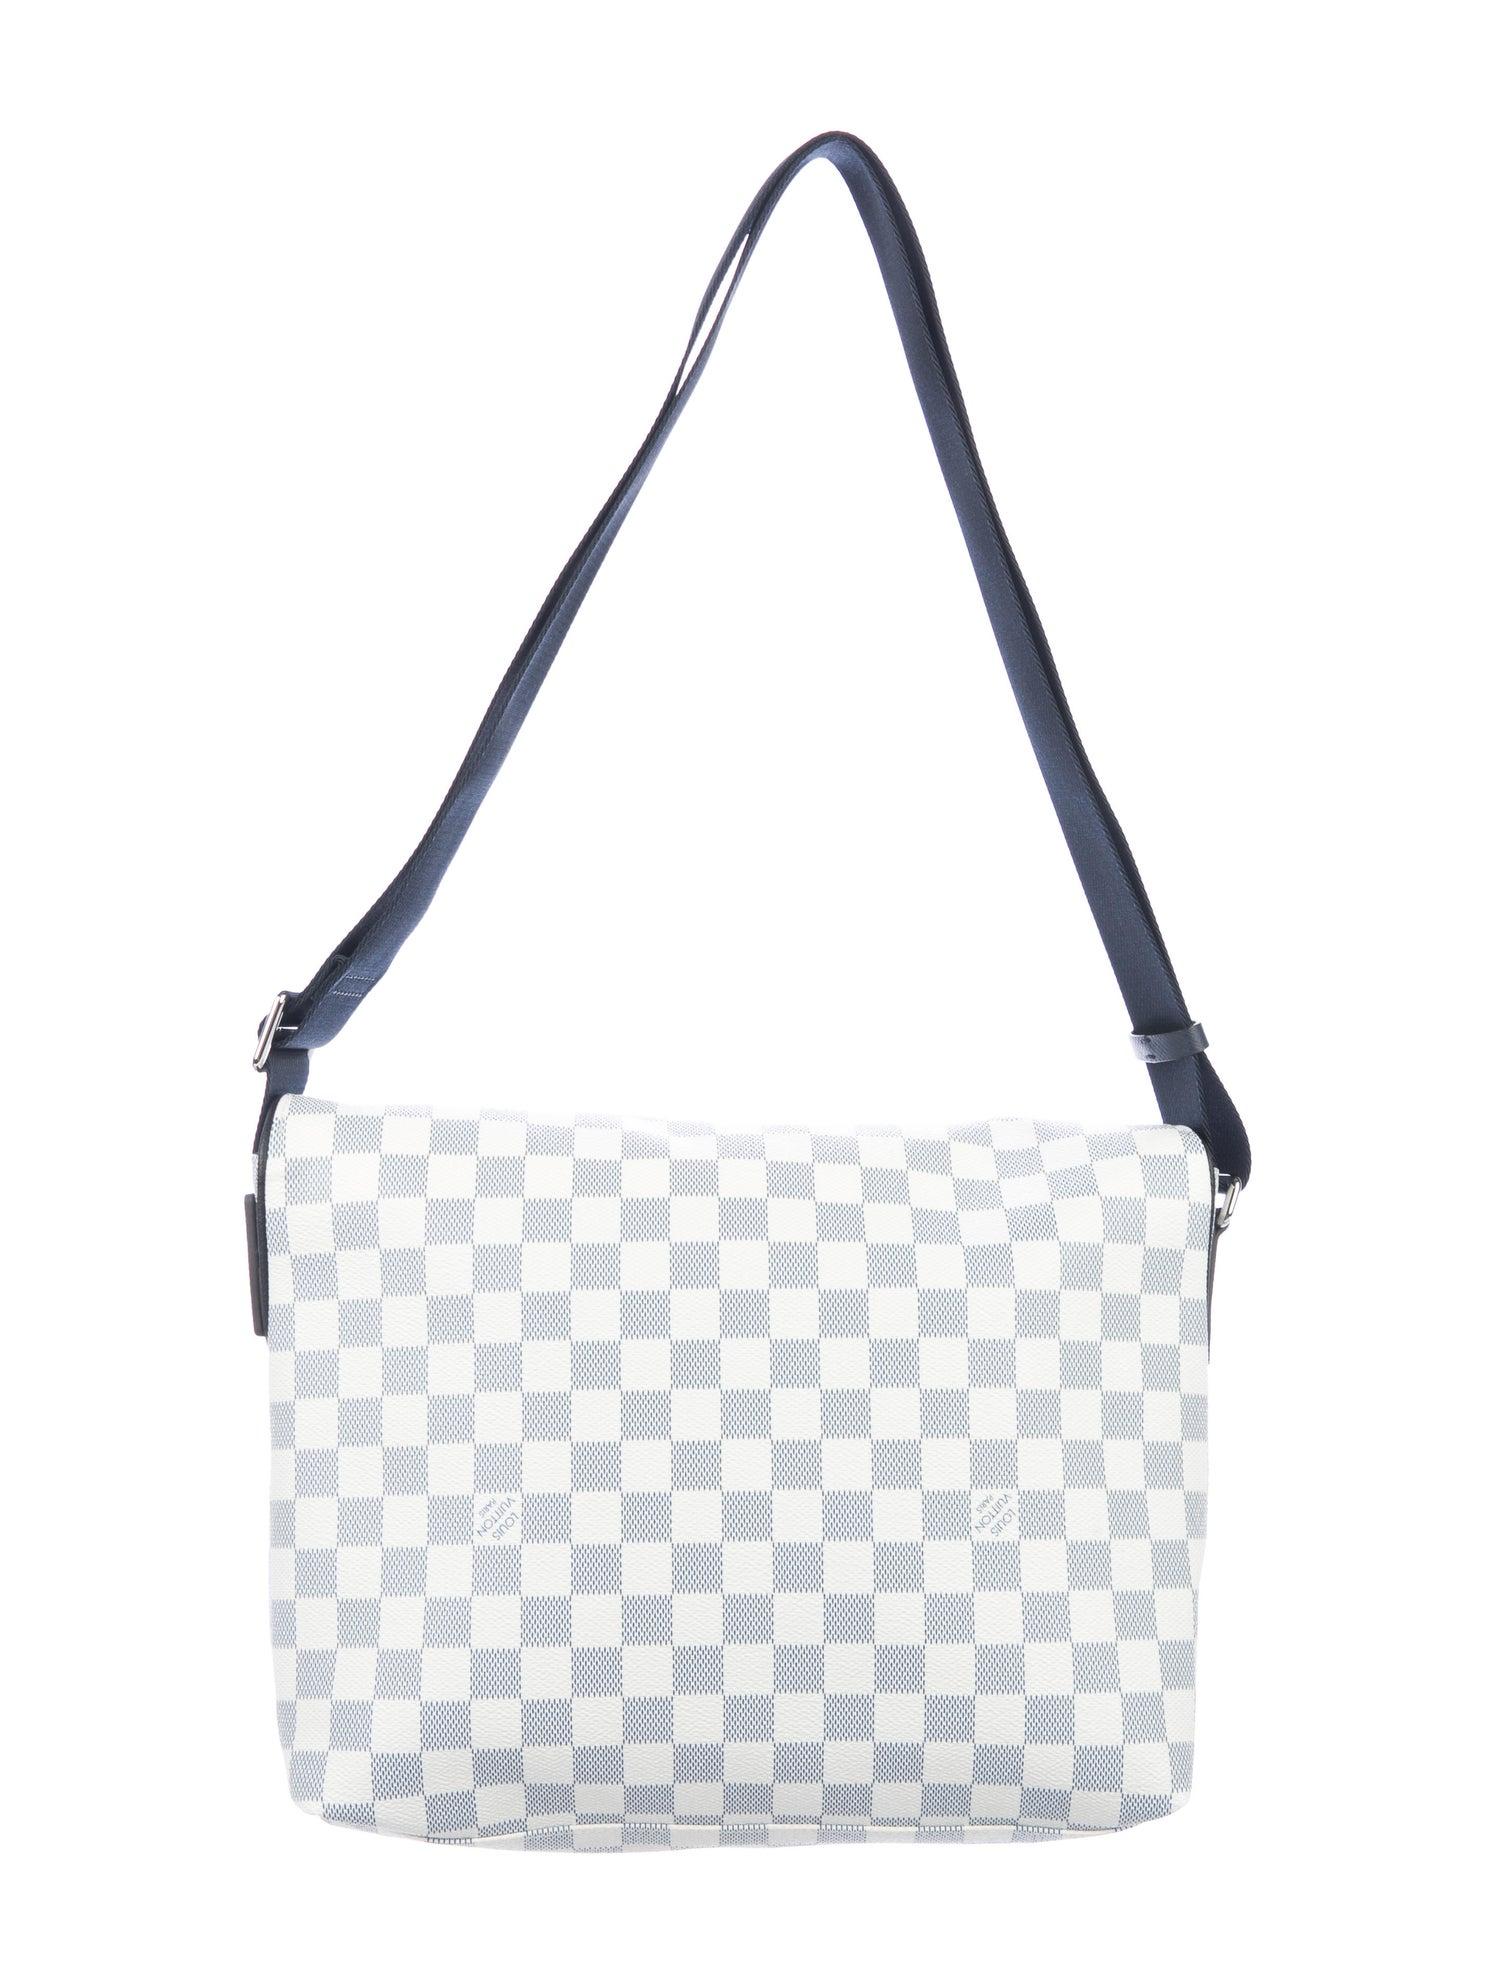 Gray Louis Vuitton NEW White Blue Monogram Men's Women's Carryall Travel Bag